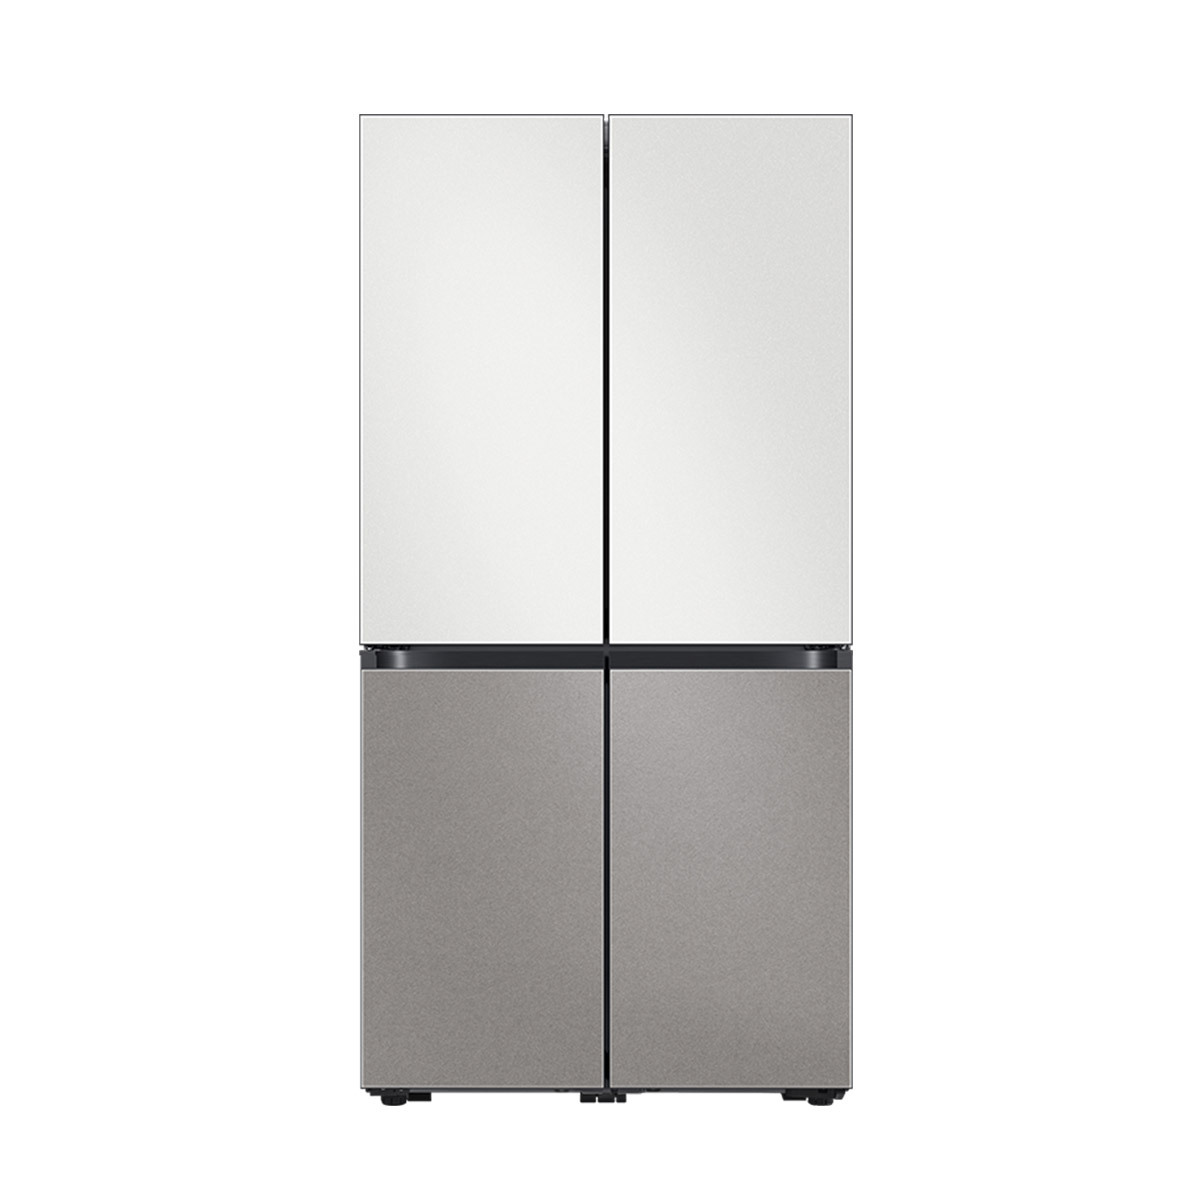 삼성 비스포크 더블쇼케이스 냉장고 865L